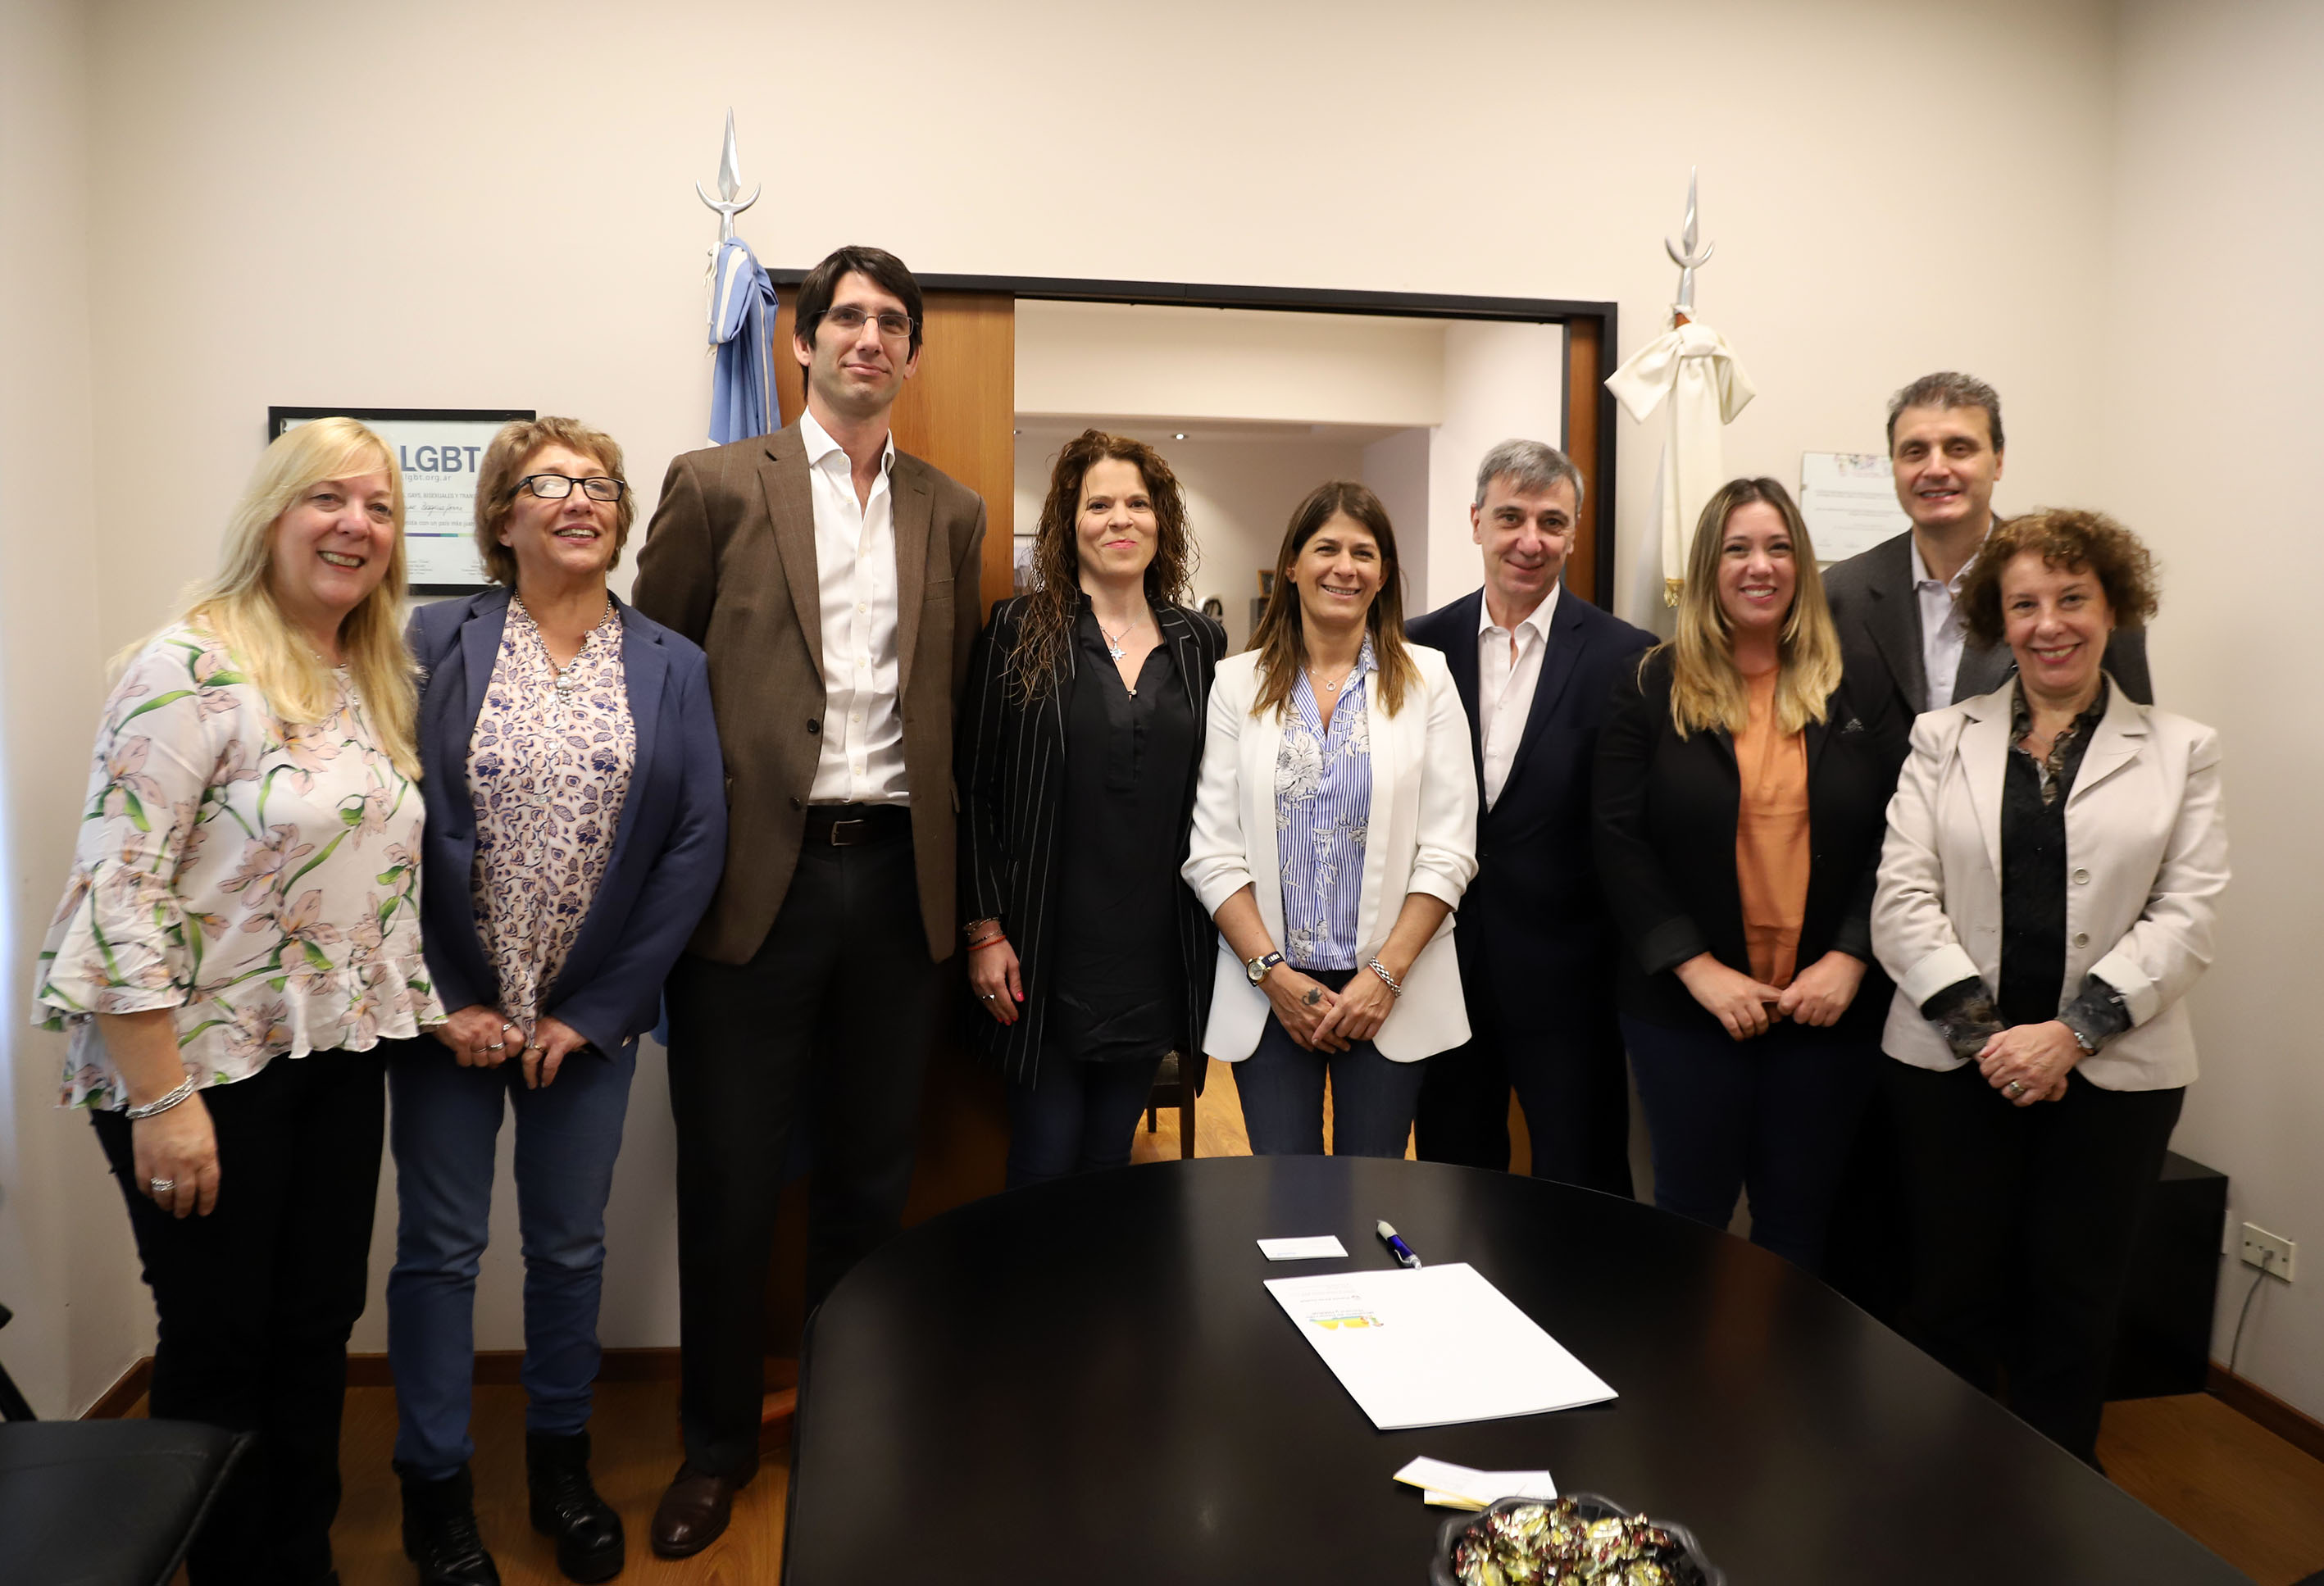 Acuerdo con Aerolíneas Argentinas para promover la equidad de género